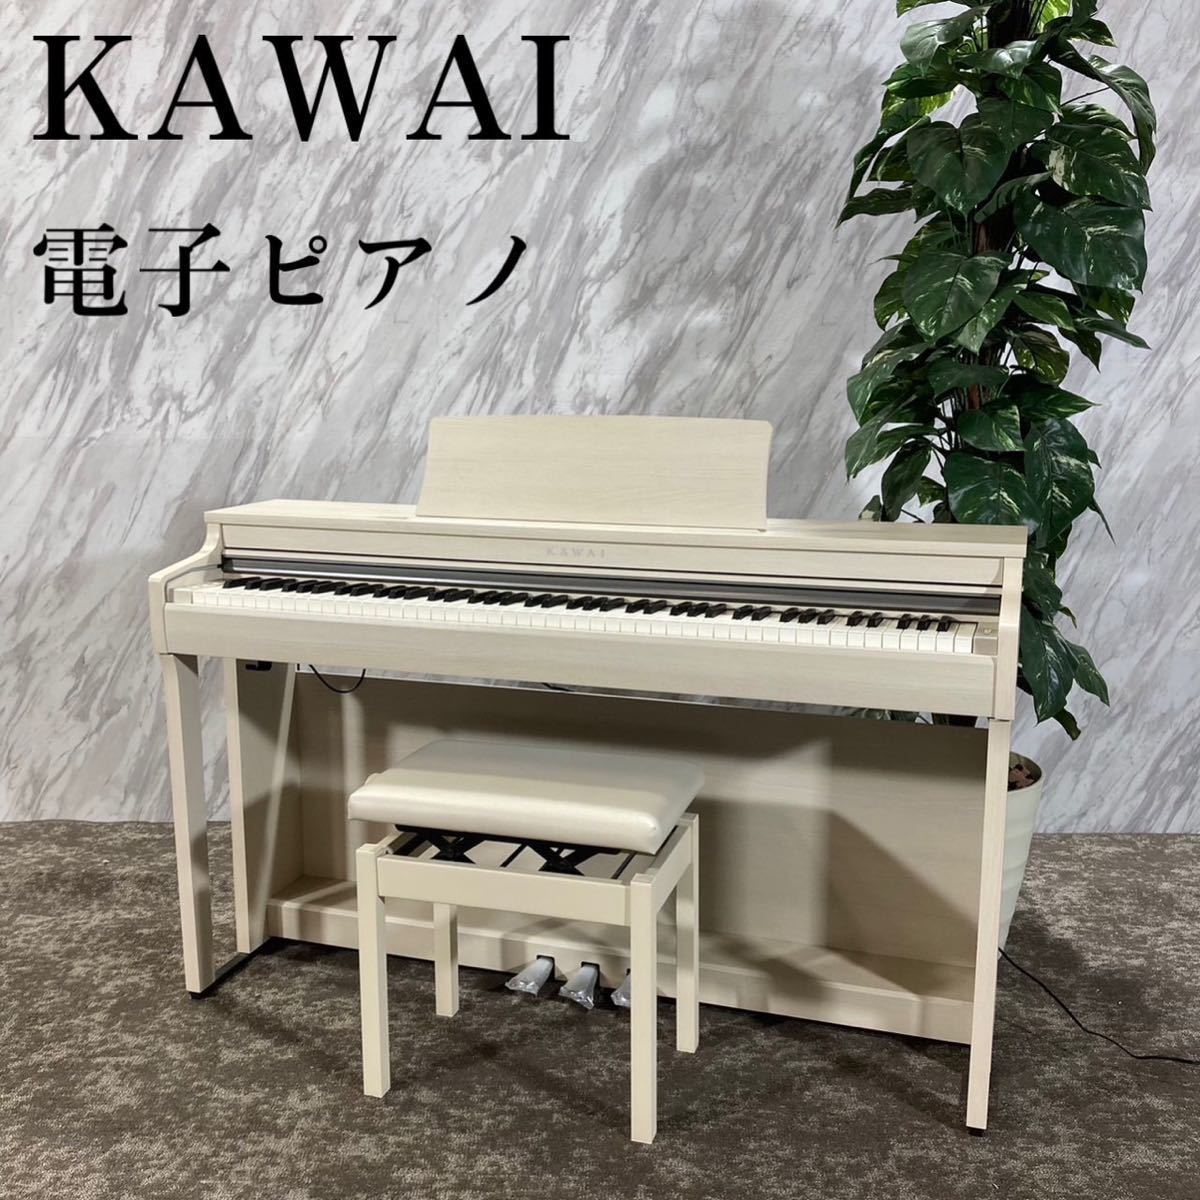 通販できます KAWAI 電子ピアノ CN27LO | www.artfive.co.jp